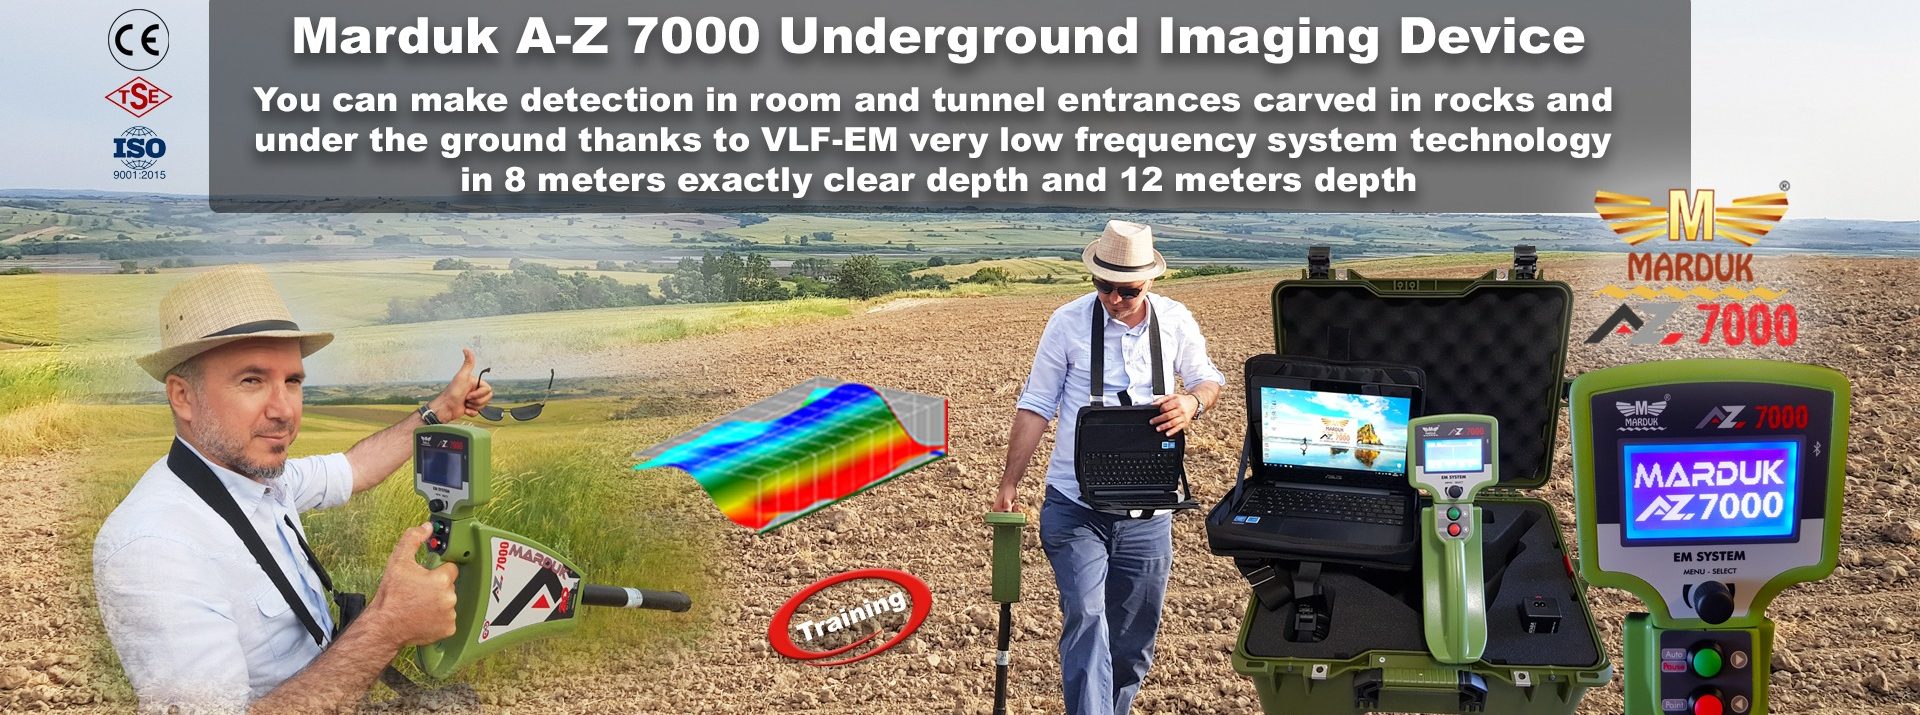 marduk-underground-scanning-radar-underground-imaging-device-underground-scanning-radar-underground-imaging-scan-gold-slider